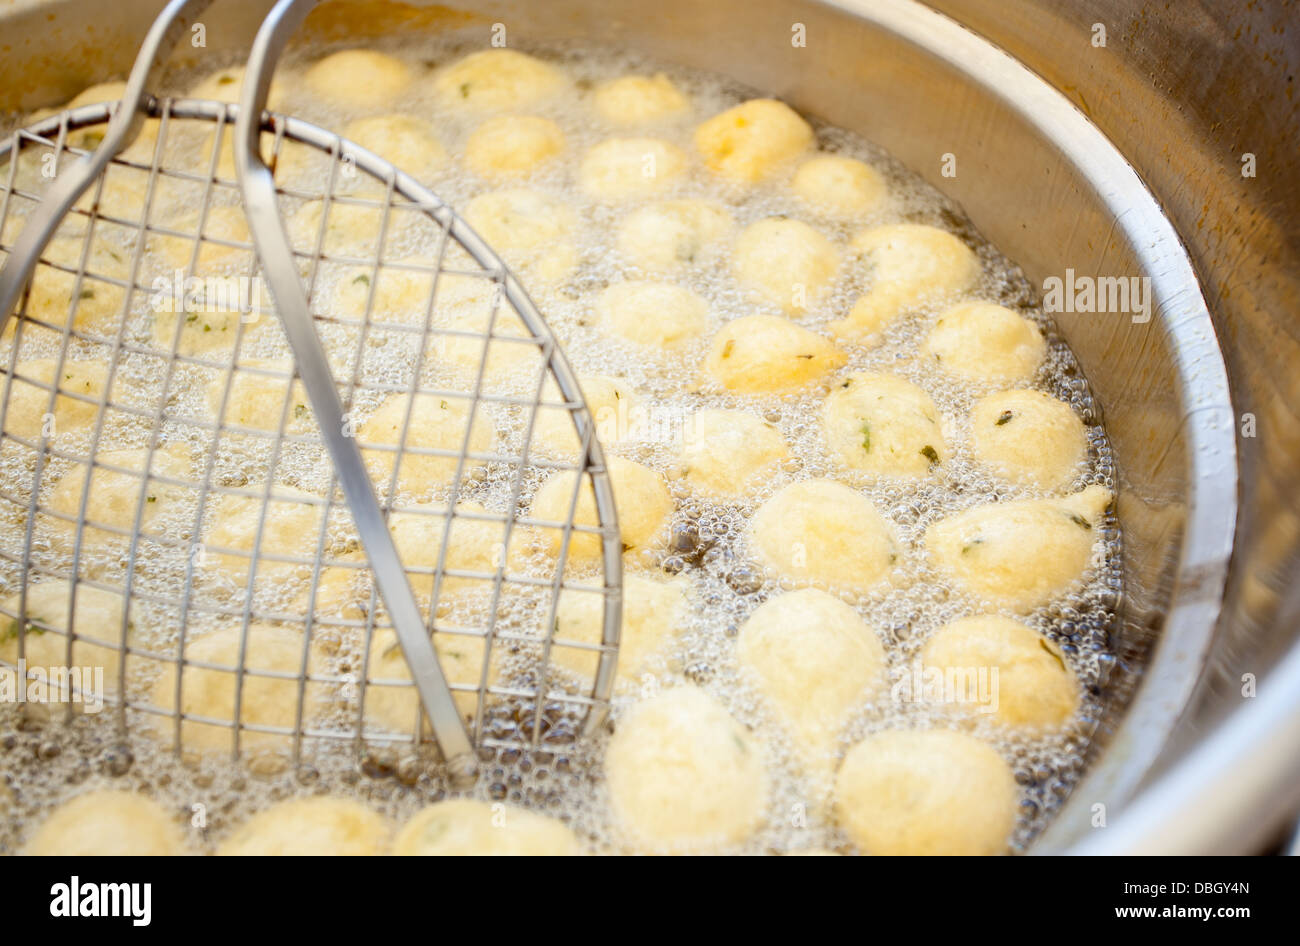 Zeppulelle napoletana tradizionale cibo fritto e salato. Foto Stock